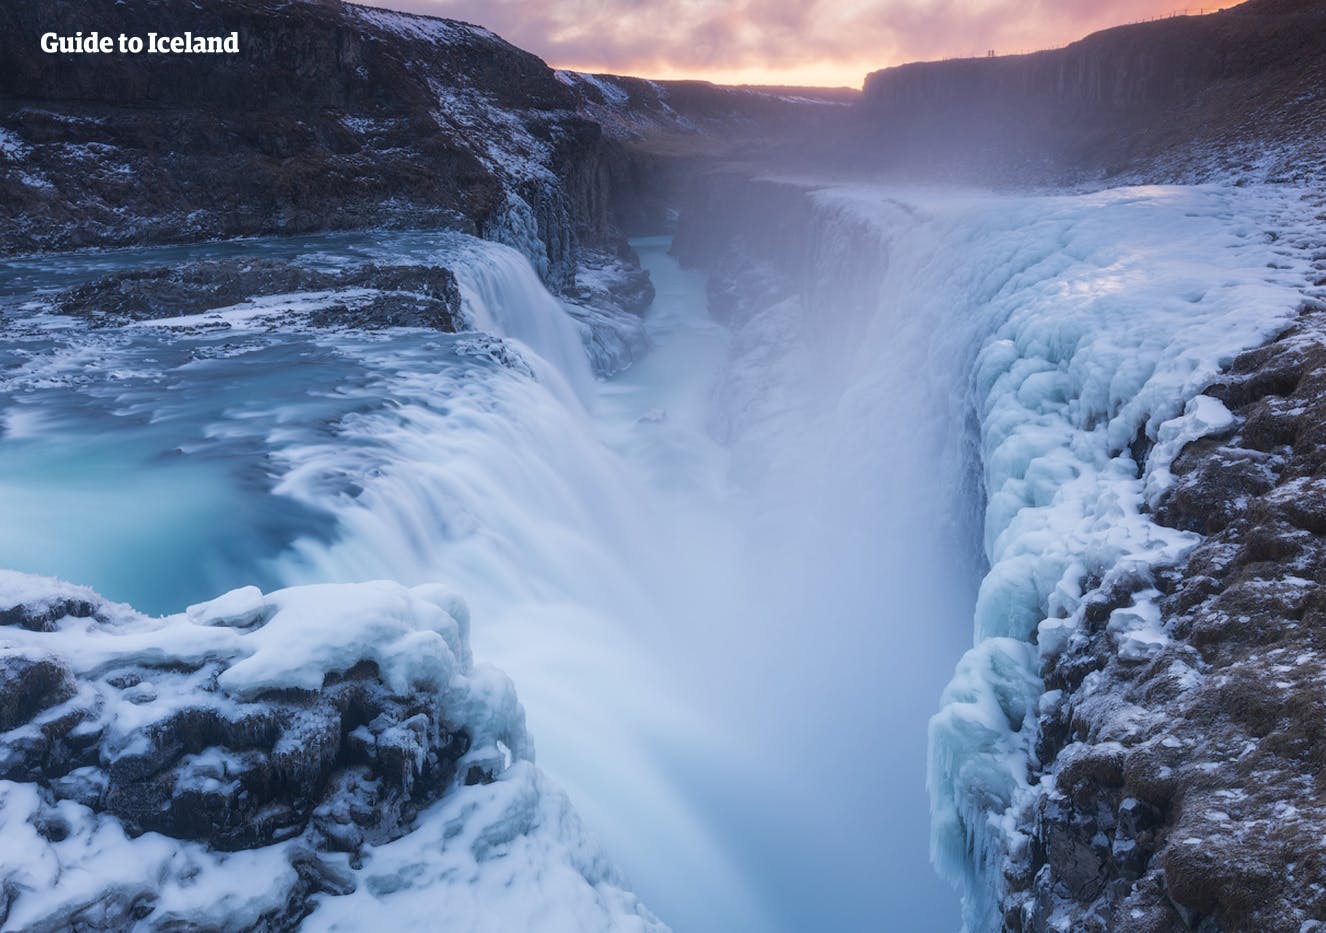 Wodospad Gullfoss zimą otacza się lodem i śniegiem, ale rzeka Hvíta nigdy nie zamarza.